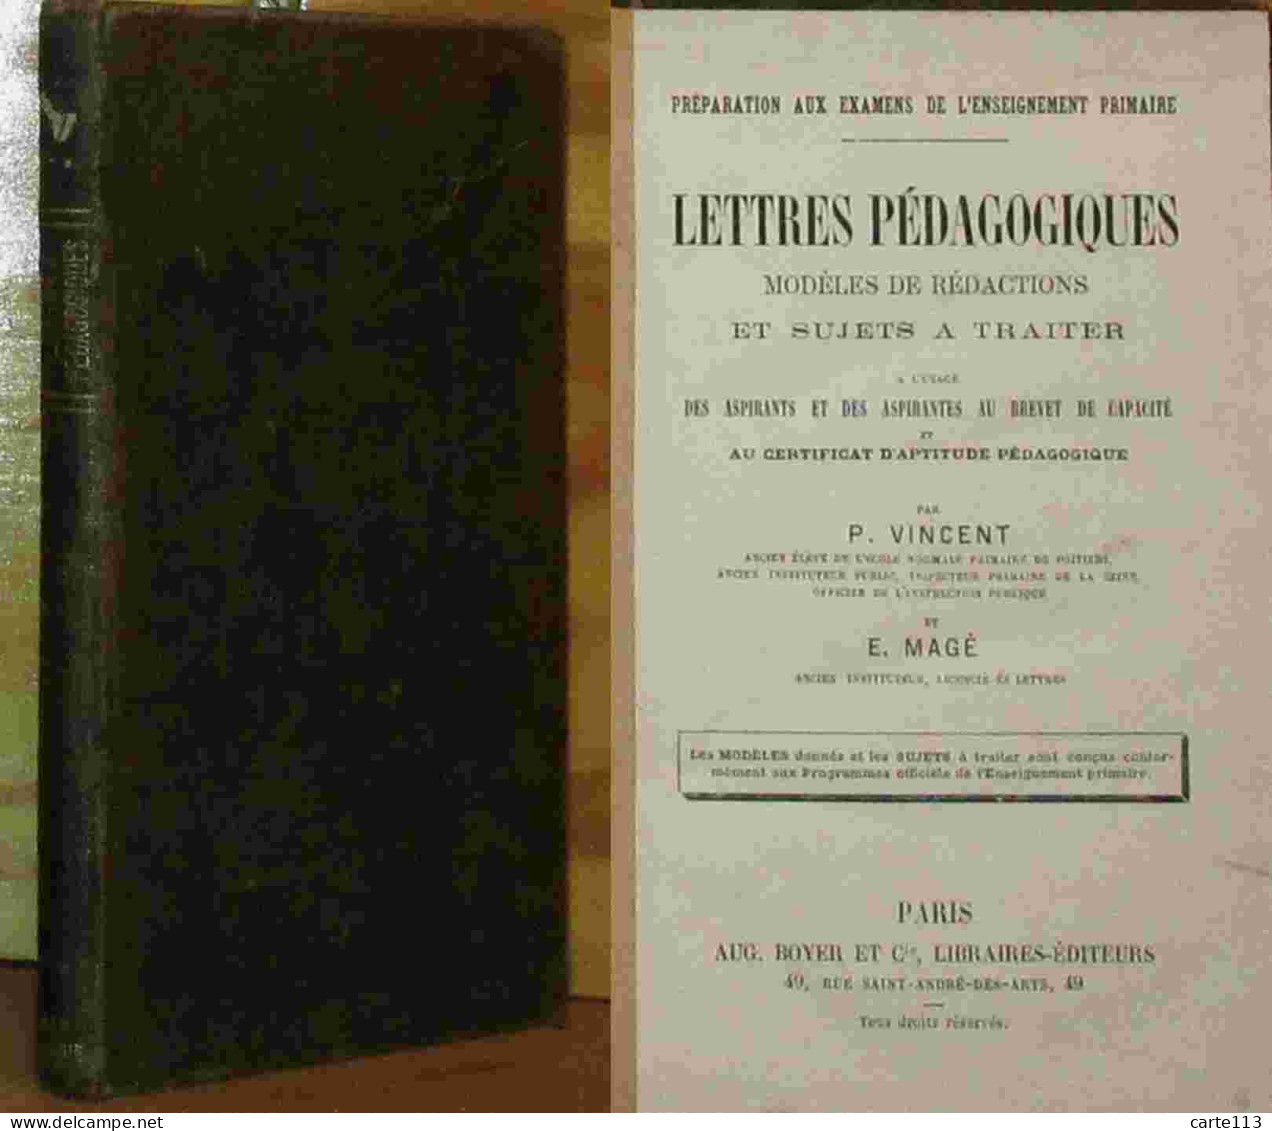 VINCENT Pierre - MAGE E. - LETTRES PEDAGOGIQUES - MODELES DE REDACTIONS ET SUJETS A TRAITER - 1801-1900